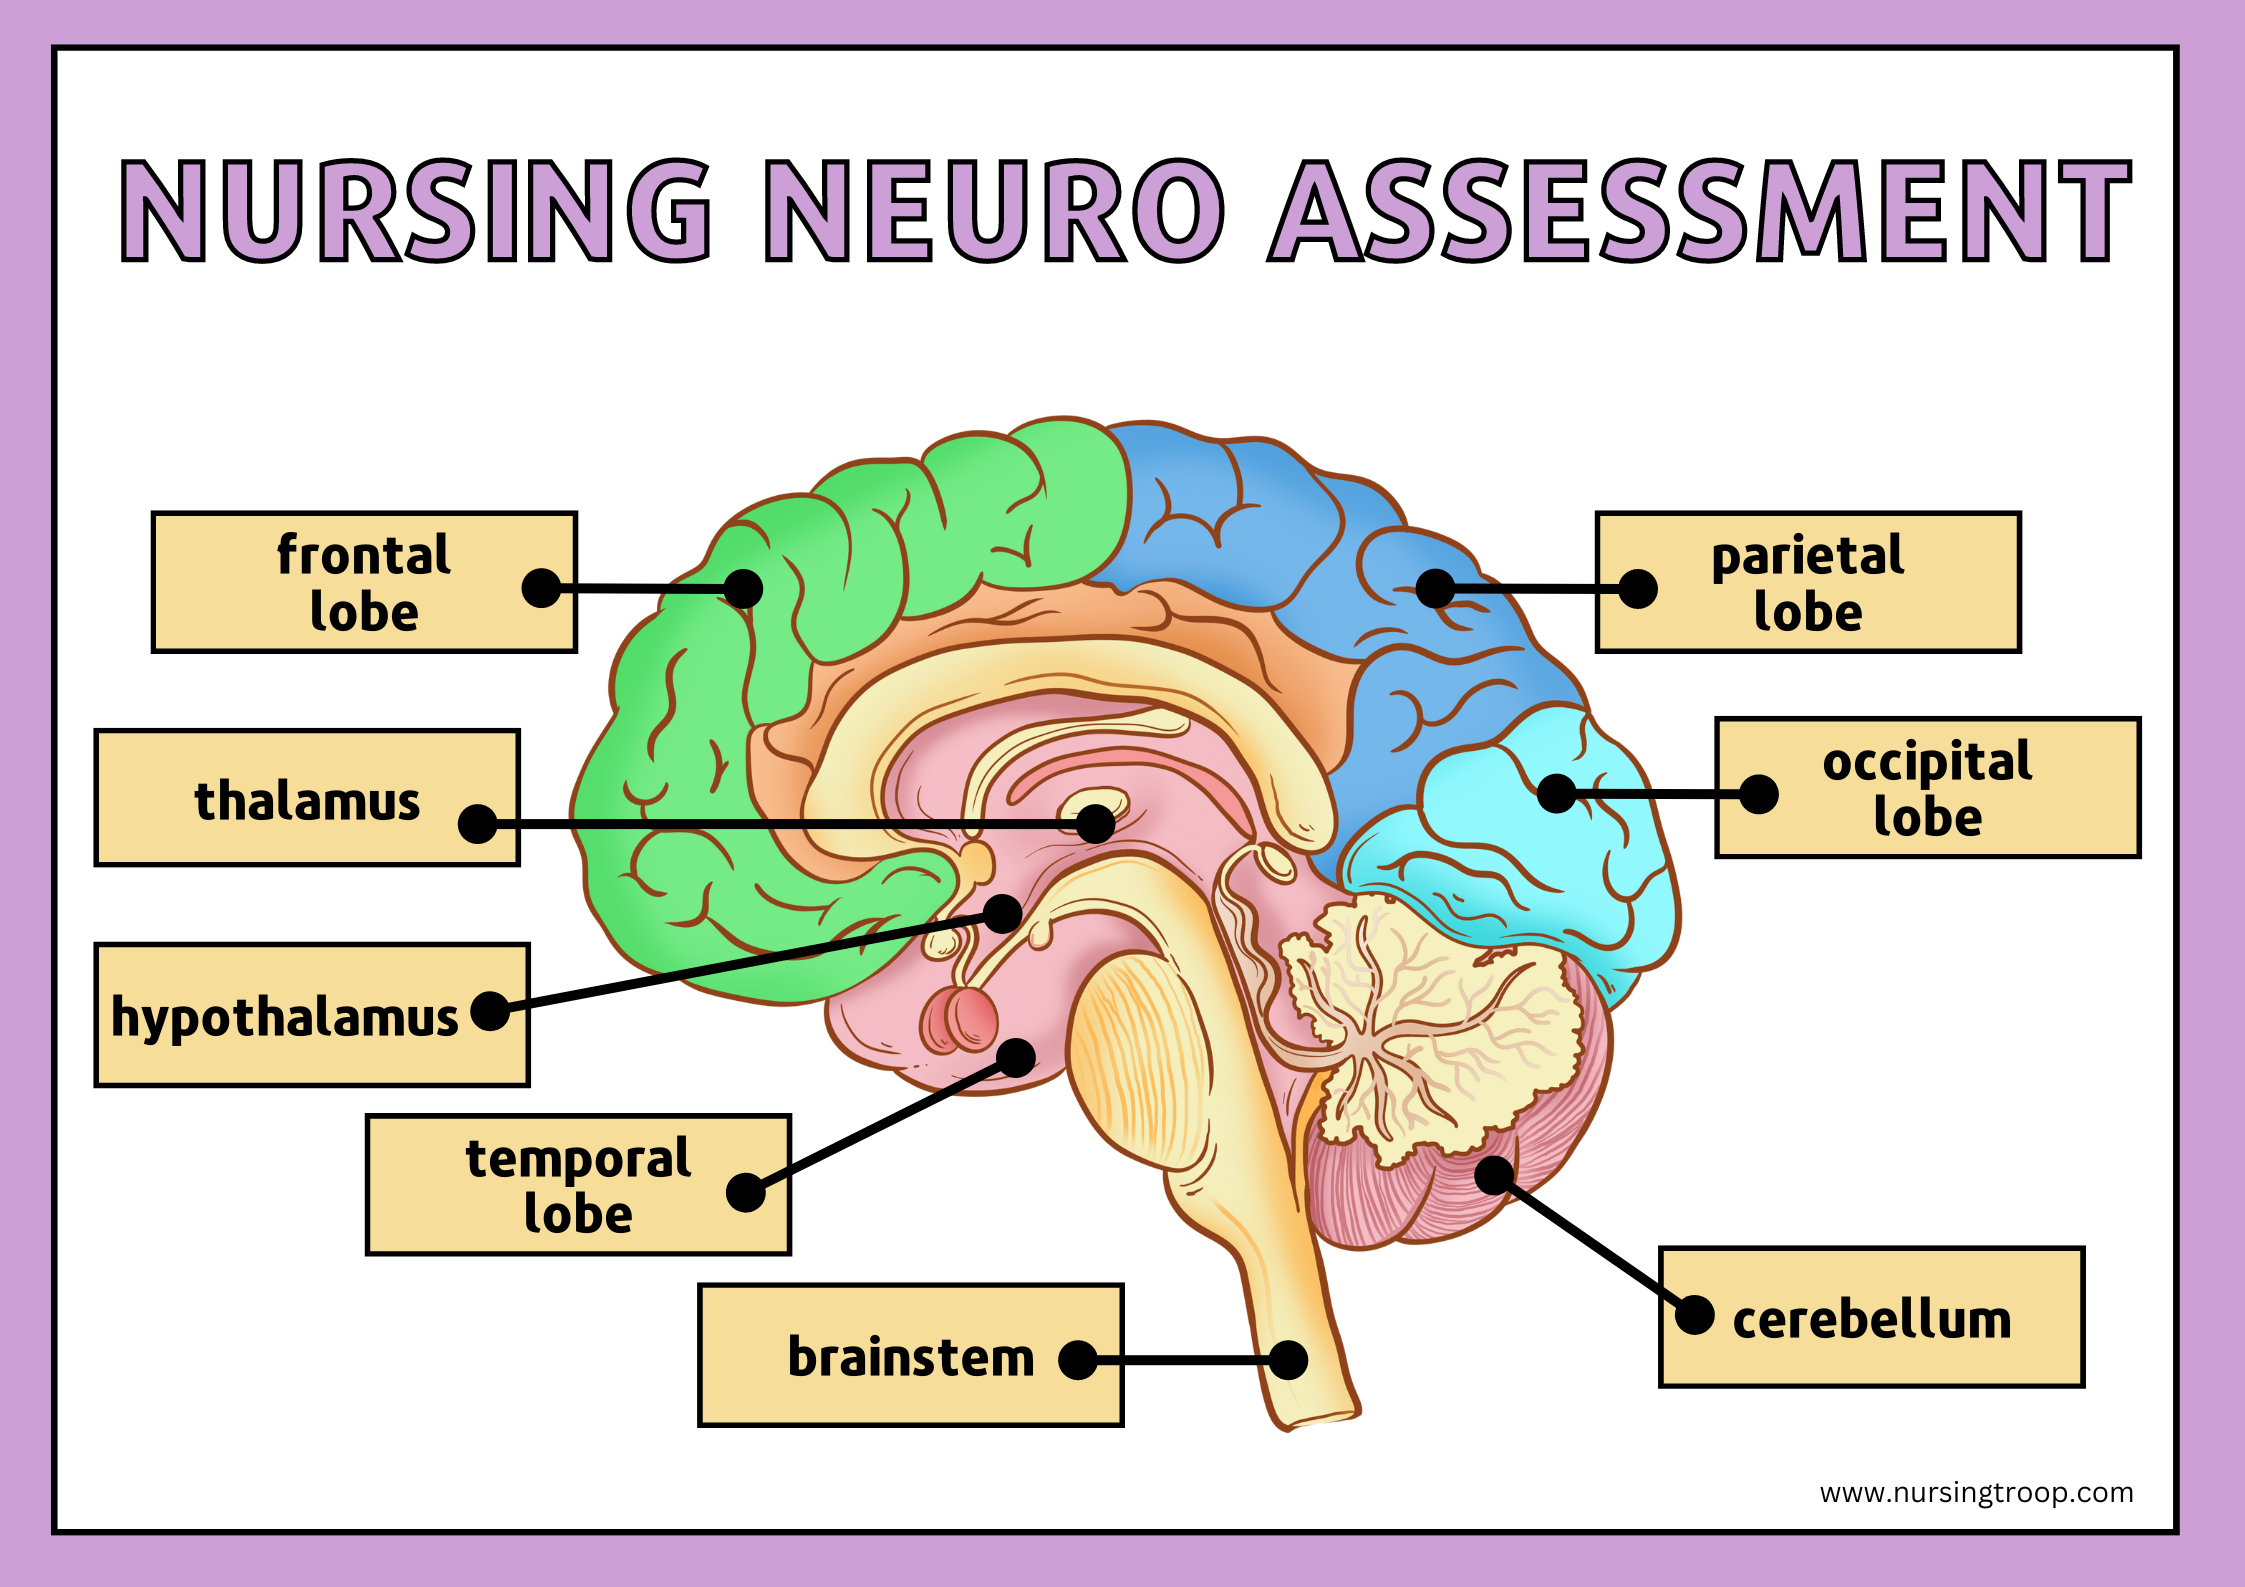 Nursing Neuro Assessment